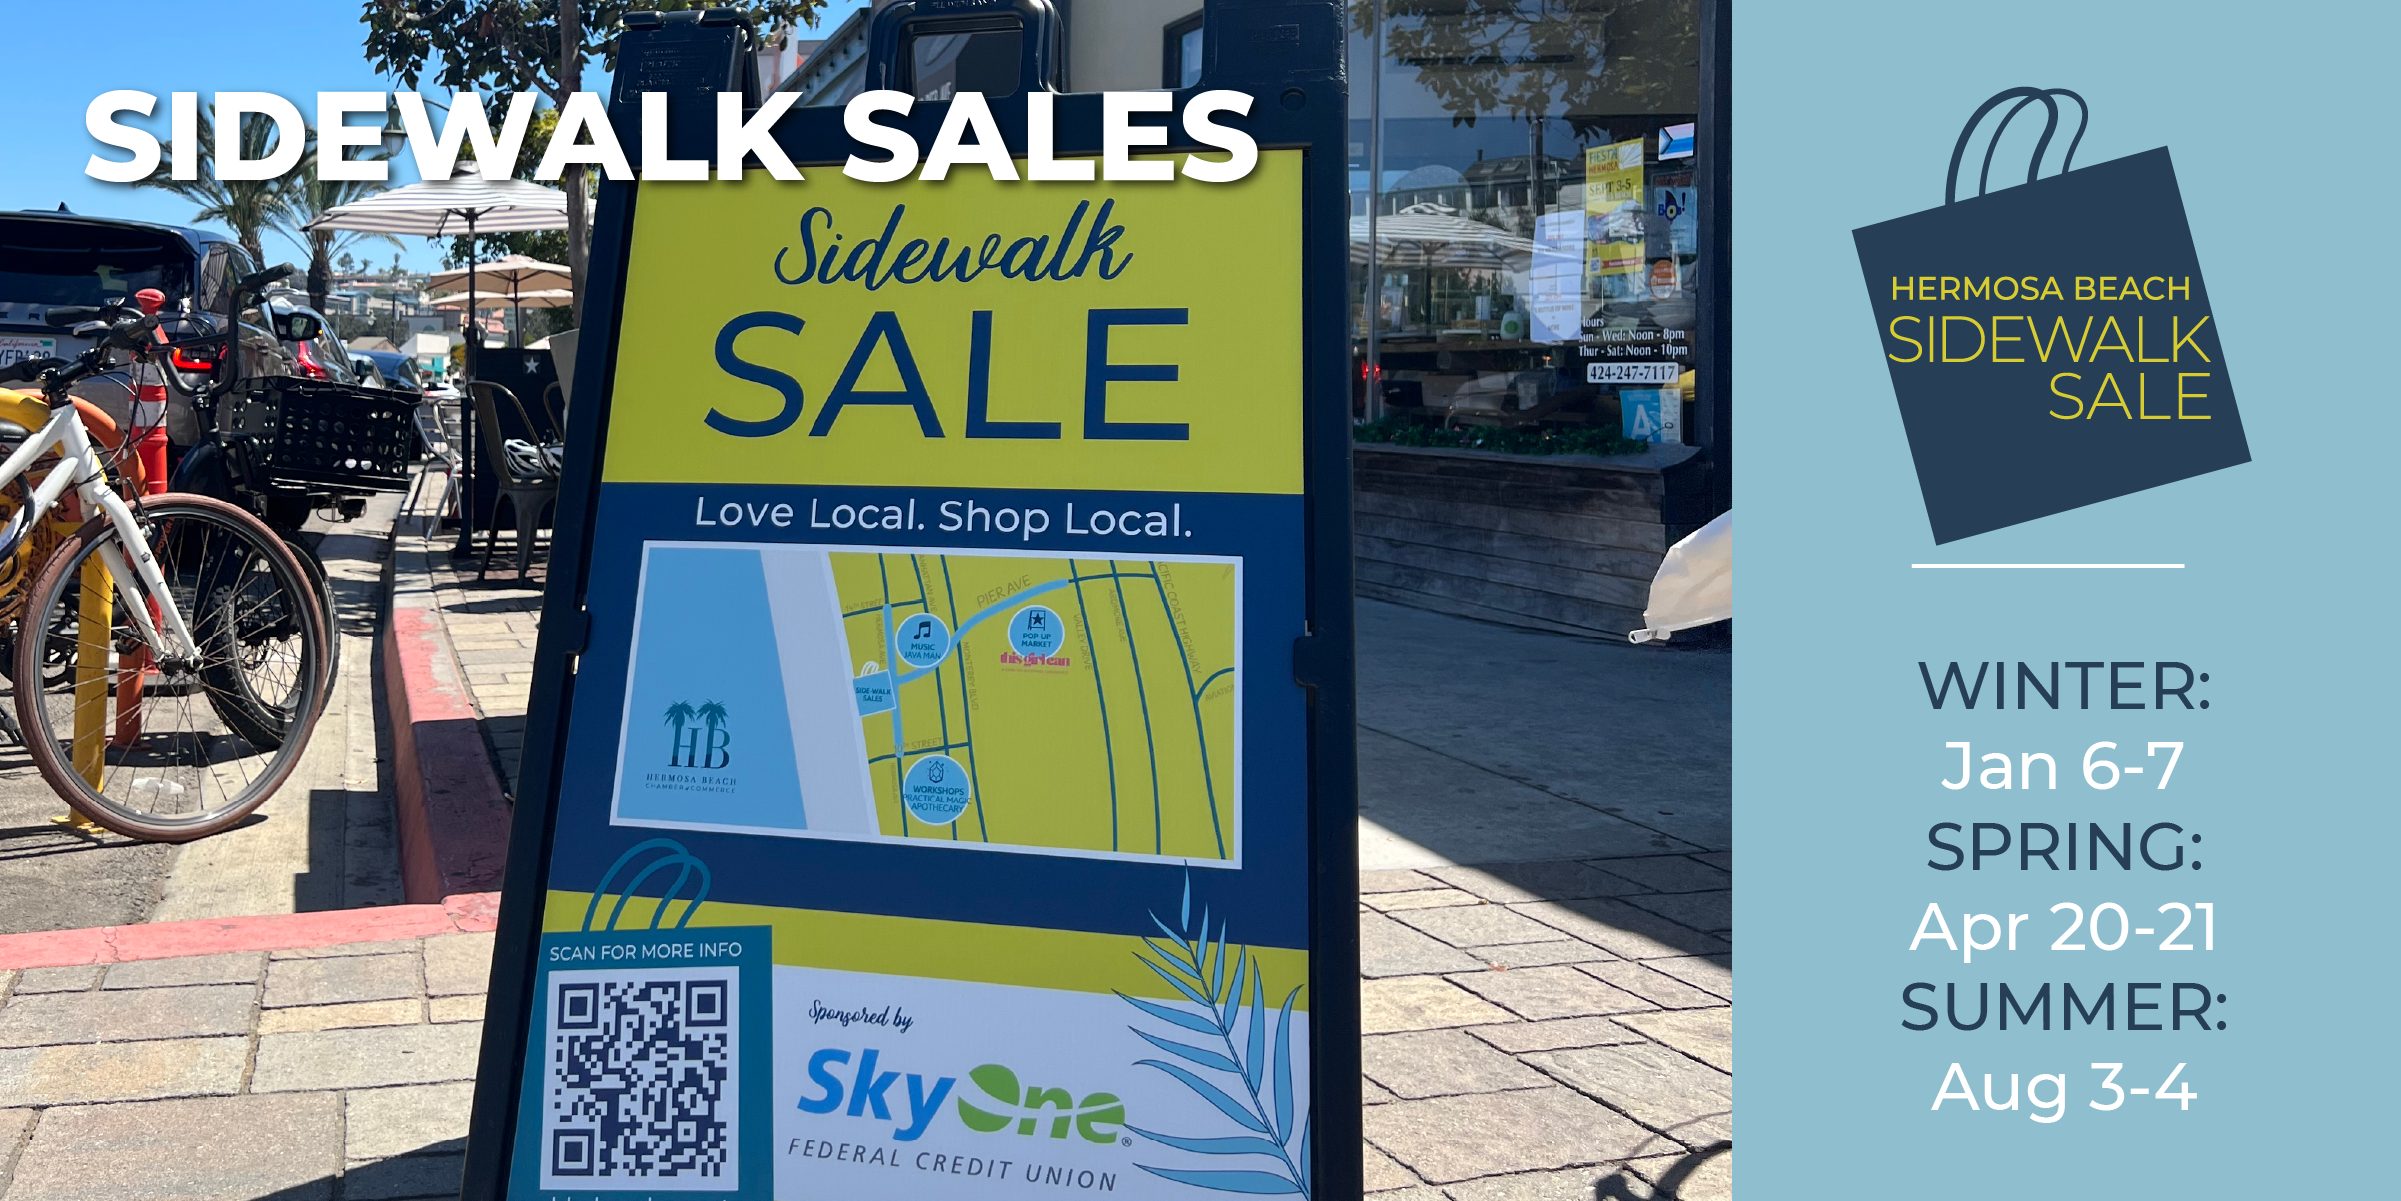 Sidewalk Sale